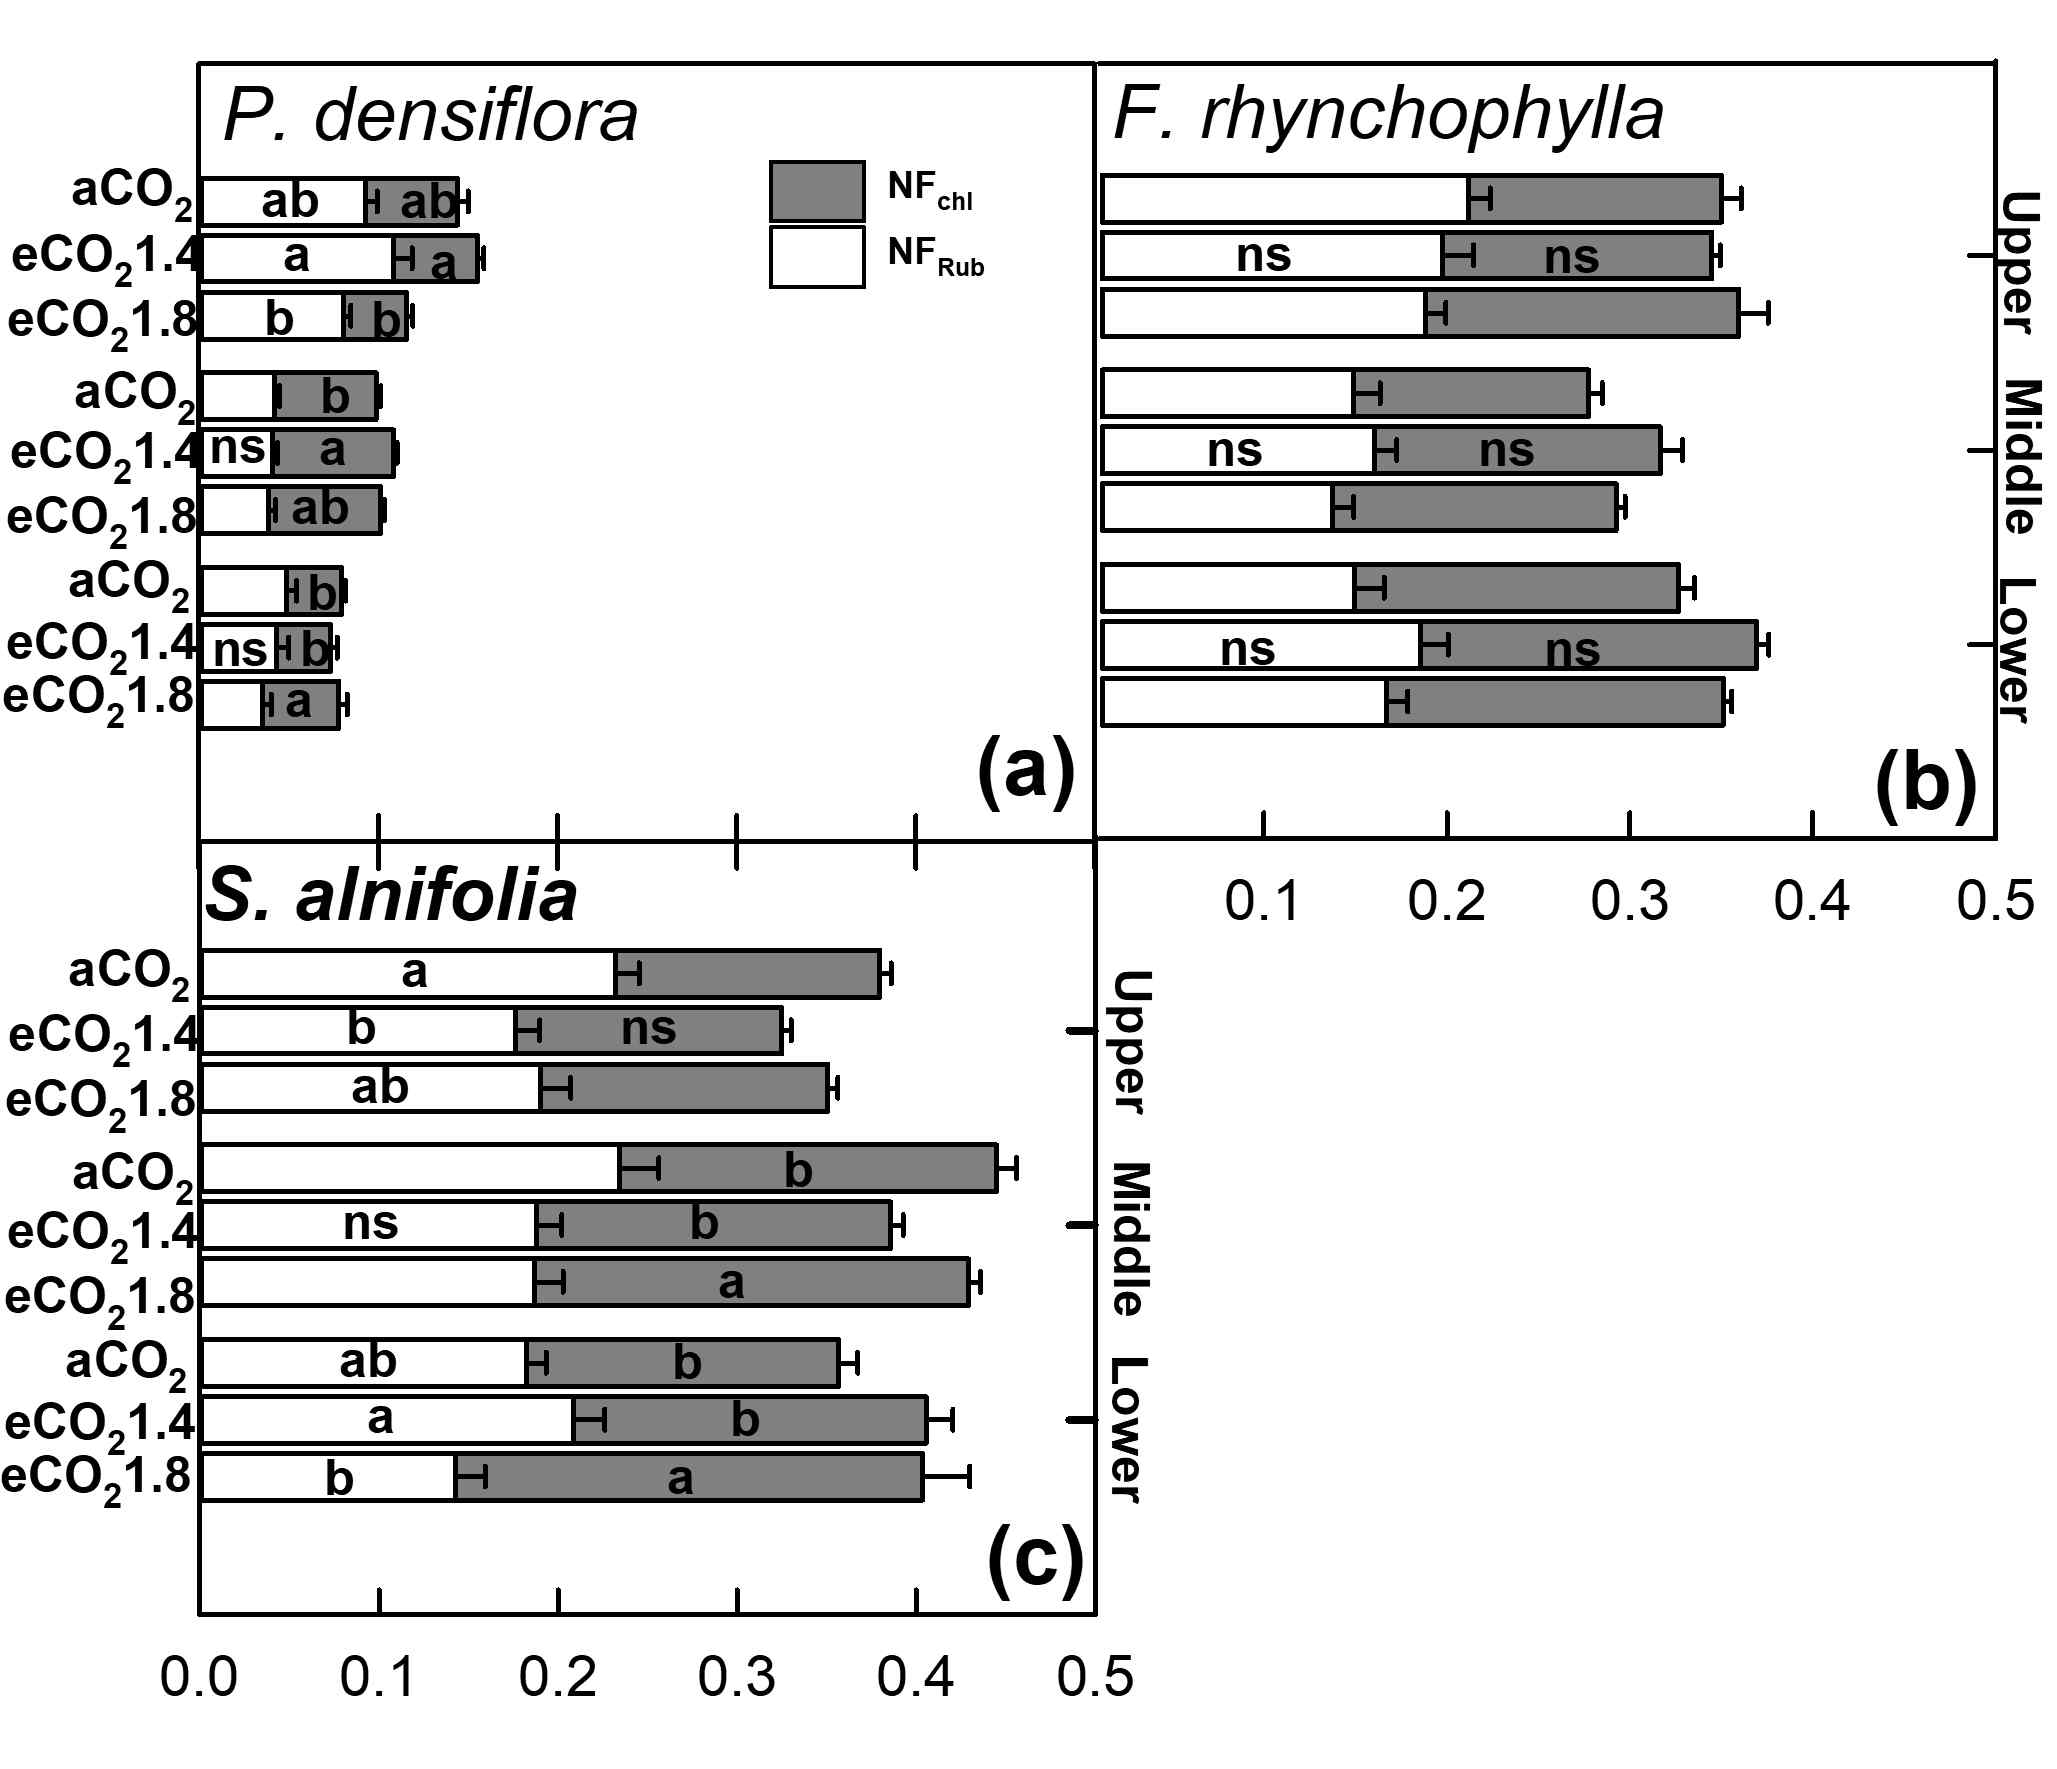 소나무(P. densifolra) : A, 물푸레나무(F.rynchophylla) : B, 팥배나무(S. alnifolia) : C의 수관별 상부(Upper), 중부(Middle), 하부(Lower)의 이산화탄소 농도에 따른 엽록소 질소 비율(NFchl)과 루비스코 질소 비율(NFRub)